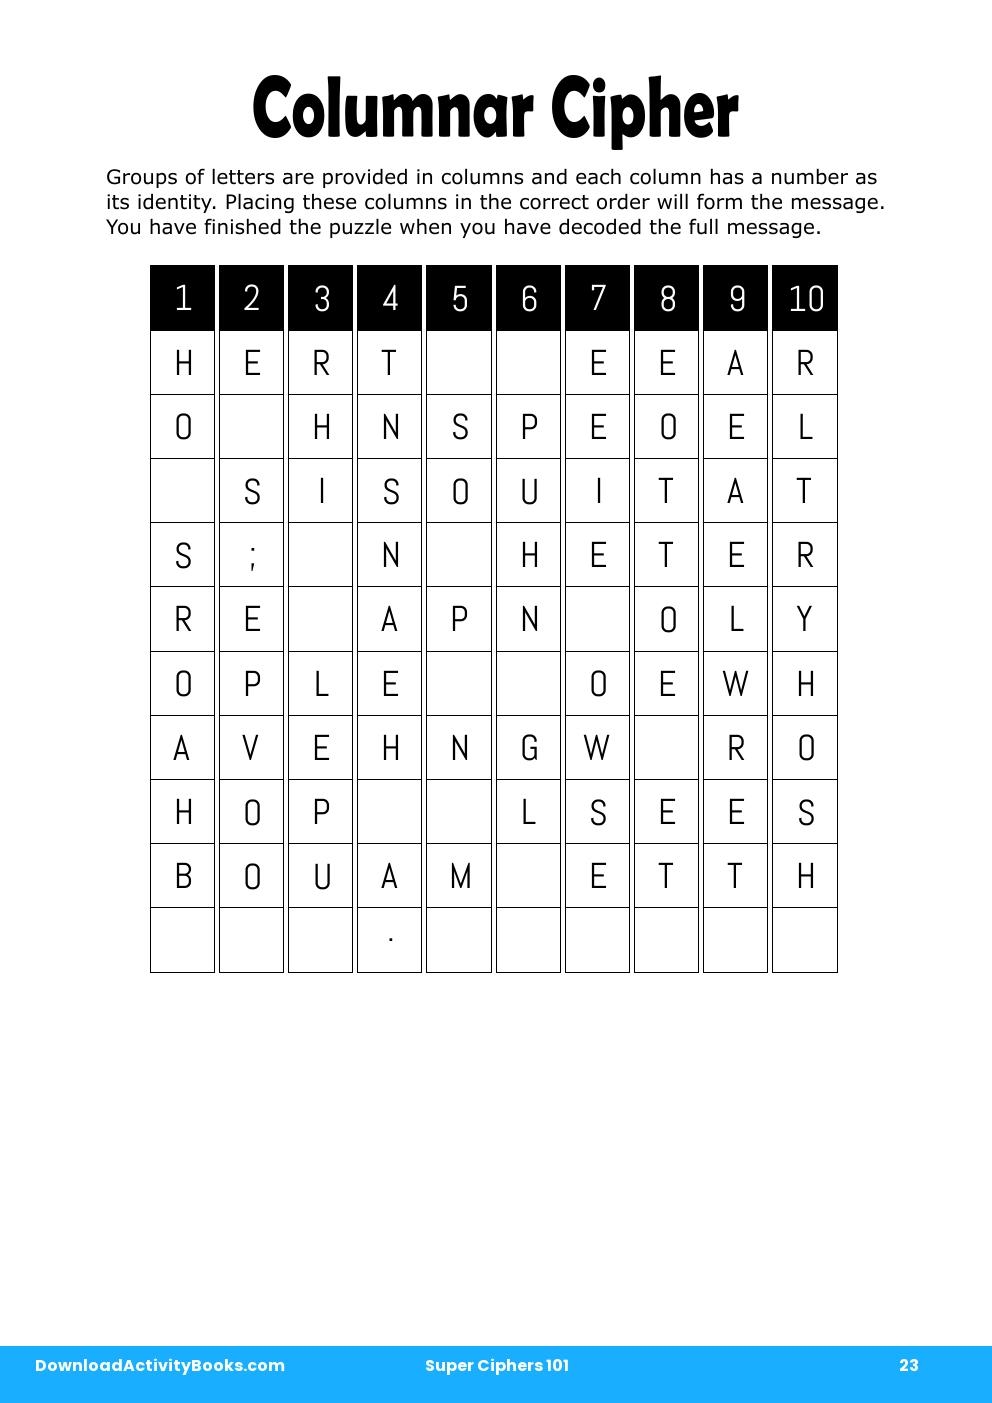 Columnar Cipher in Super Ciphers 101